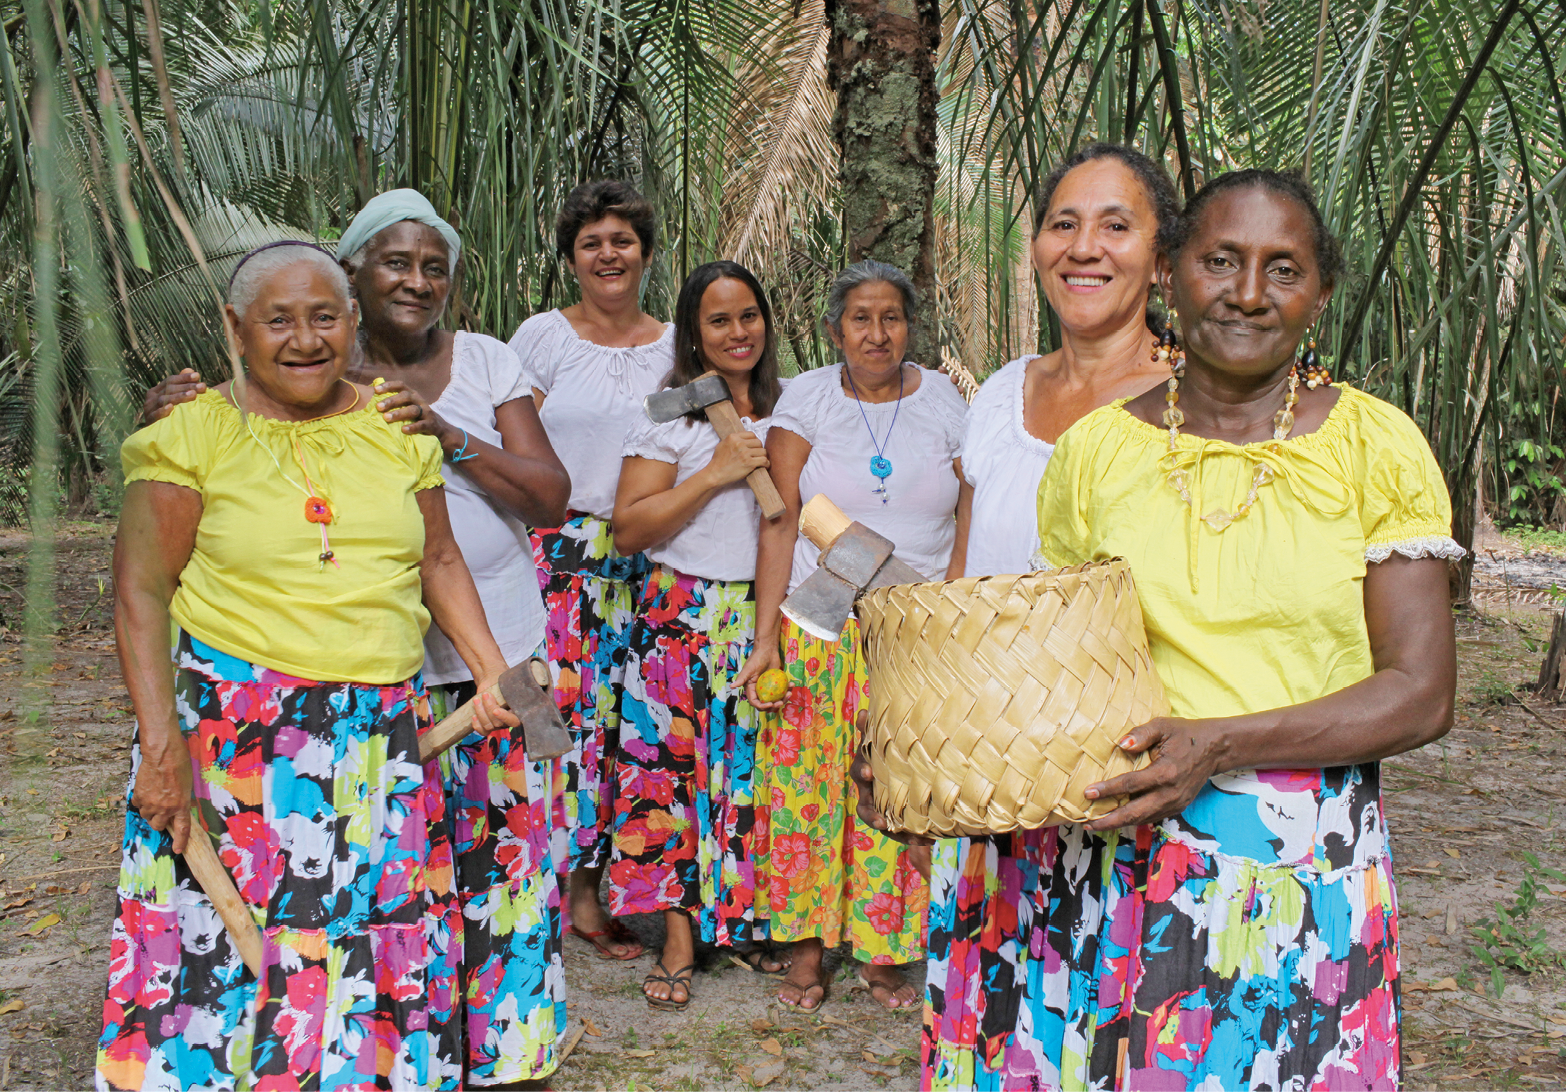 Fotografia. Sete mulheres em pé, usando camisetas brancas ou amarelas e saias coloridas; algumas seguram machados pequenos; a que aparece em primeiro plano segura um cesto redondo e bege. Ao fundo, há árvores verdes.